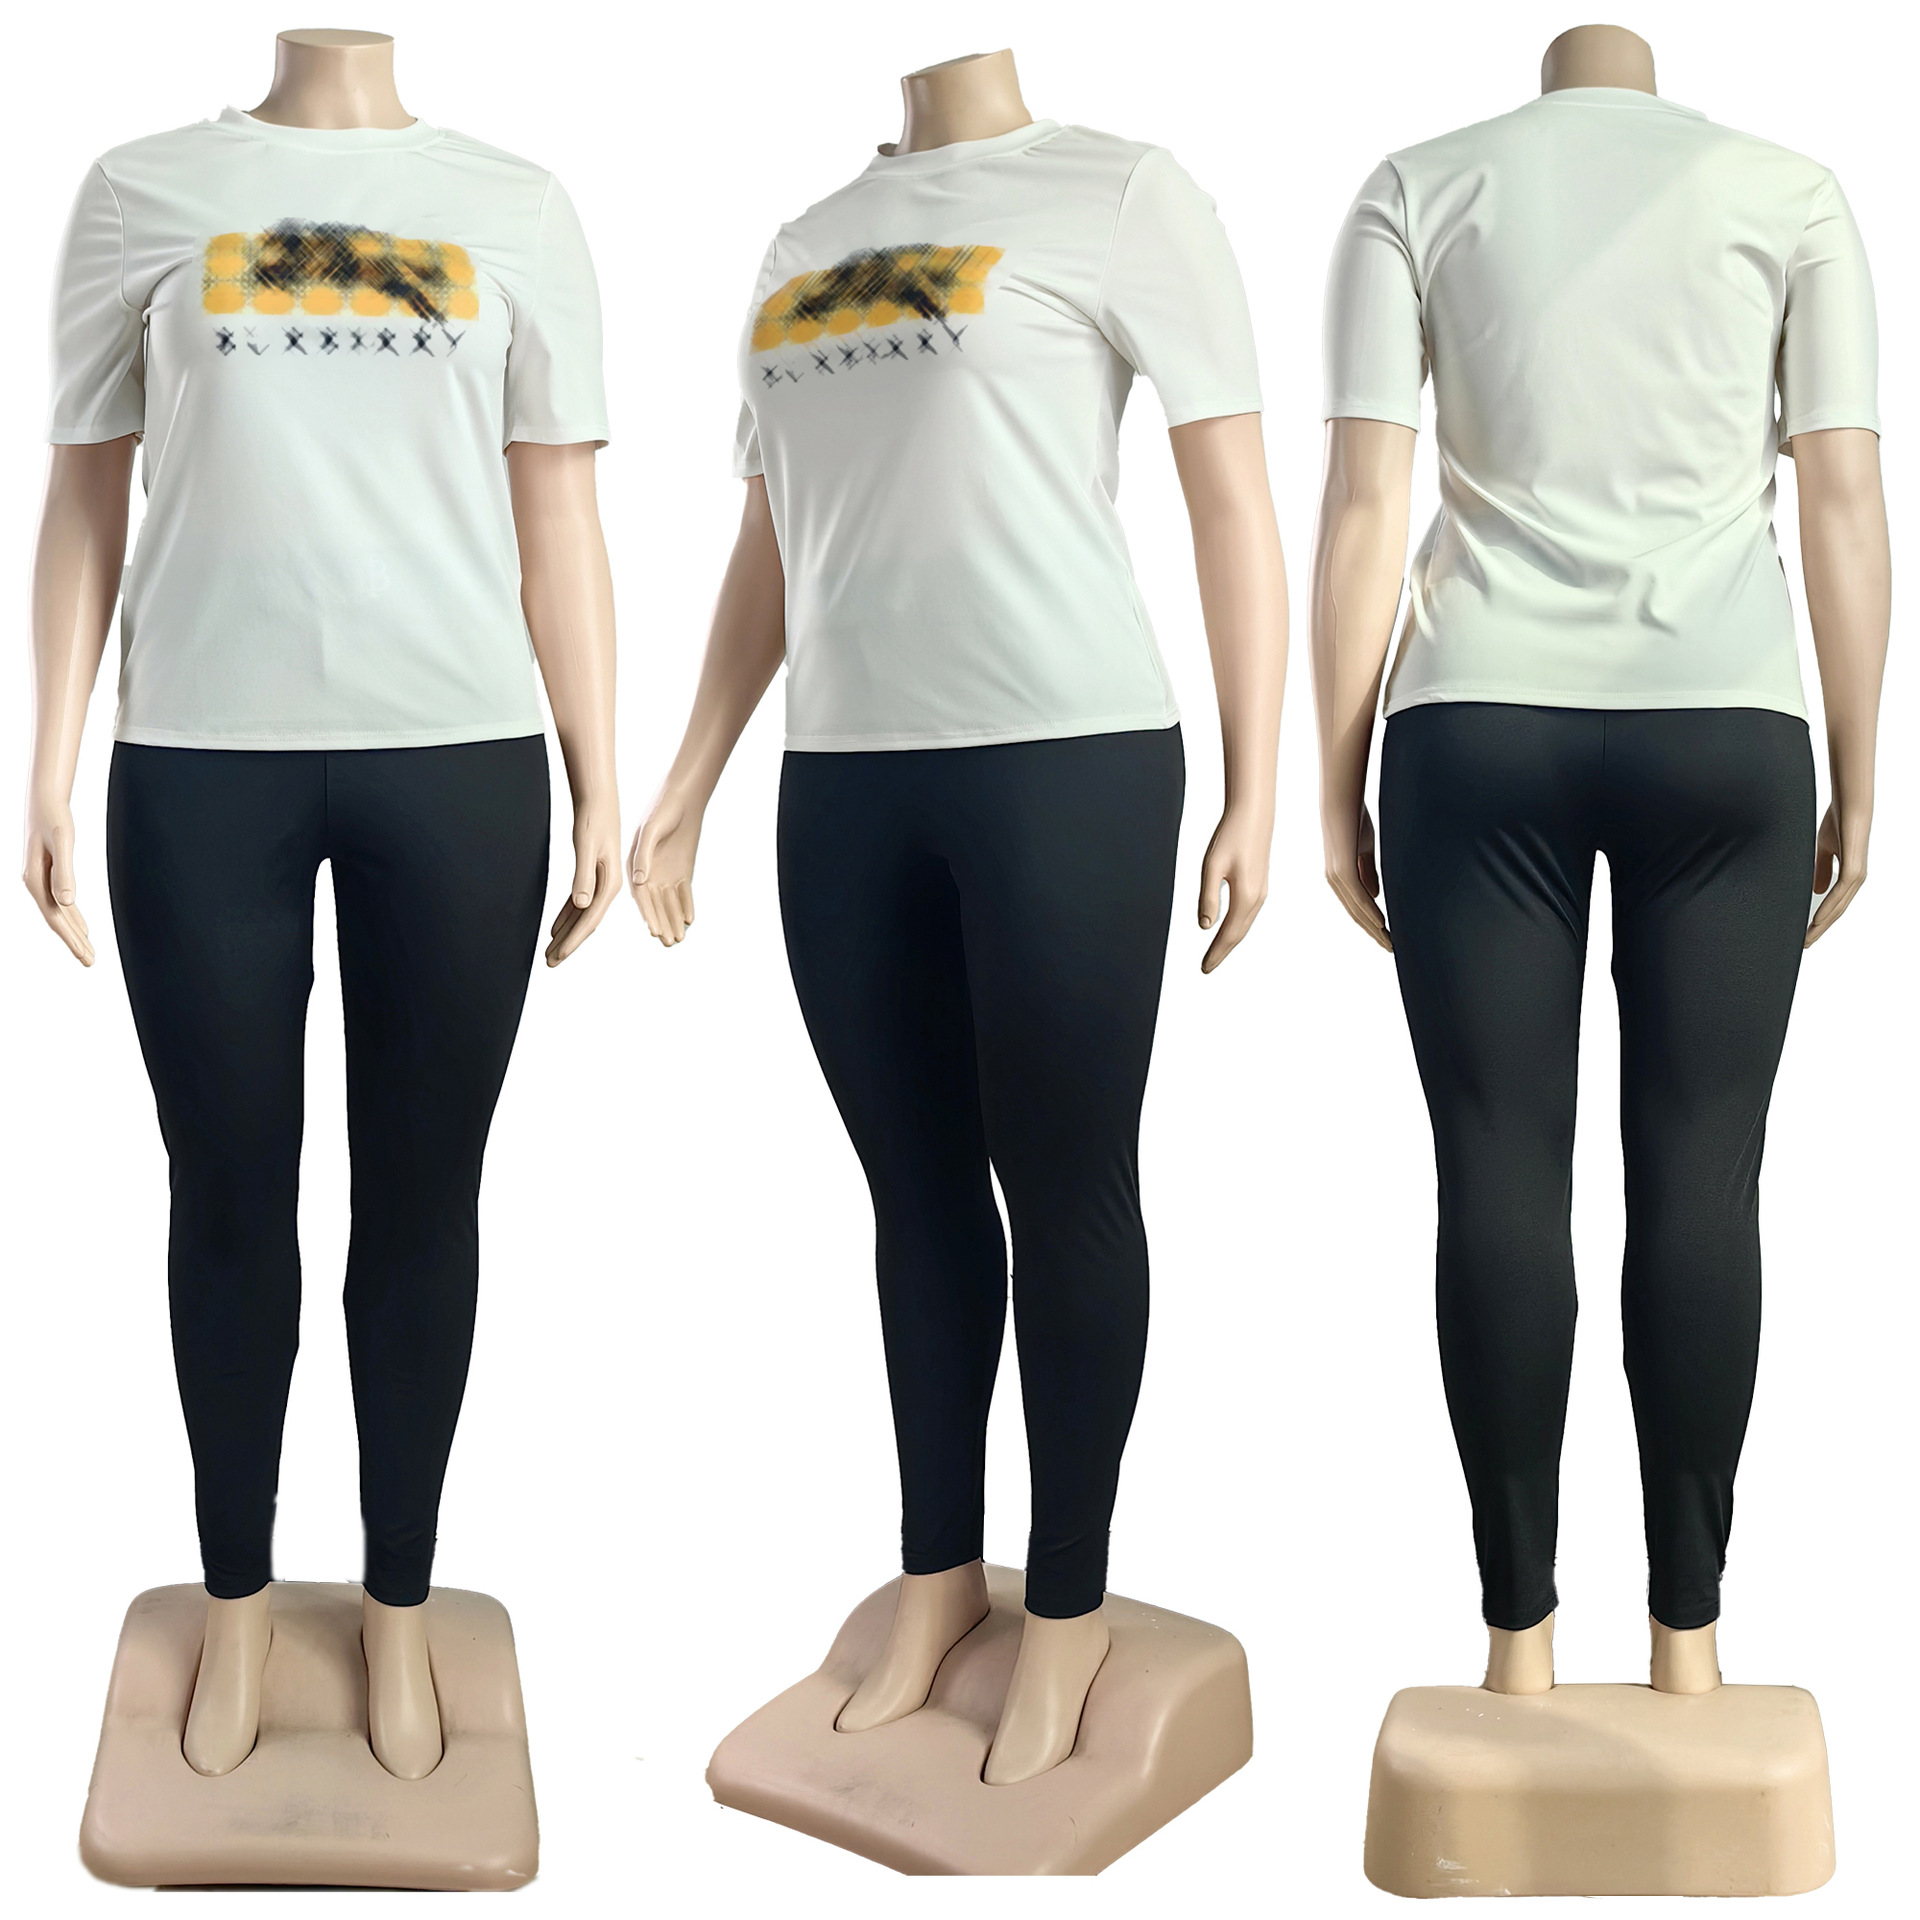 نساء المسارات بدلة الركض قمصان طباعة قمصان سراويل 2 قطعة مجموعة من سيدة ملابس قصيرة الأكمام التعرق الرياضي بدلات الجري غير الرسمية بالإضافة إلى الحجم L-4XL